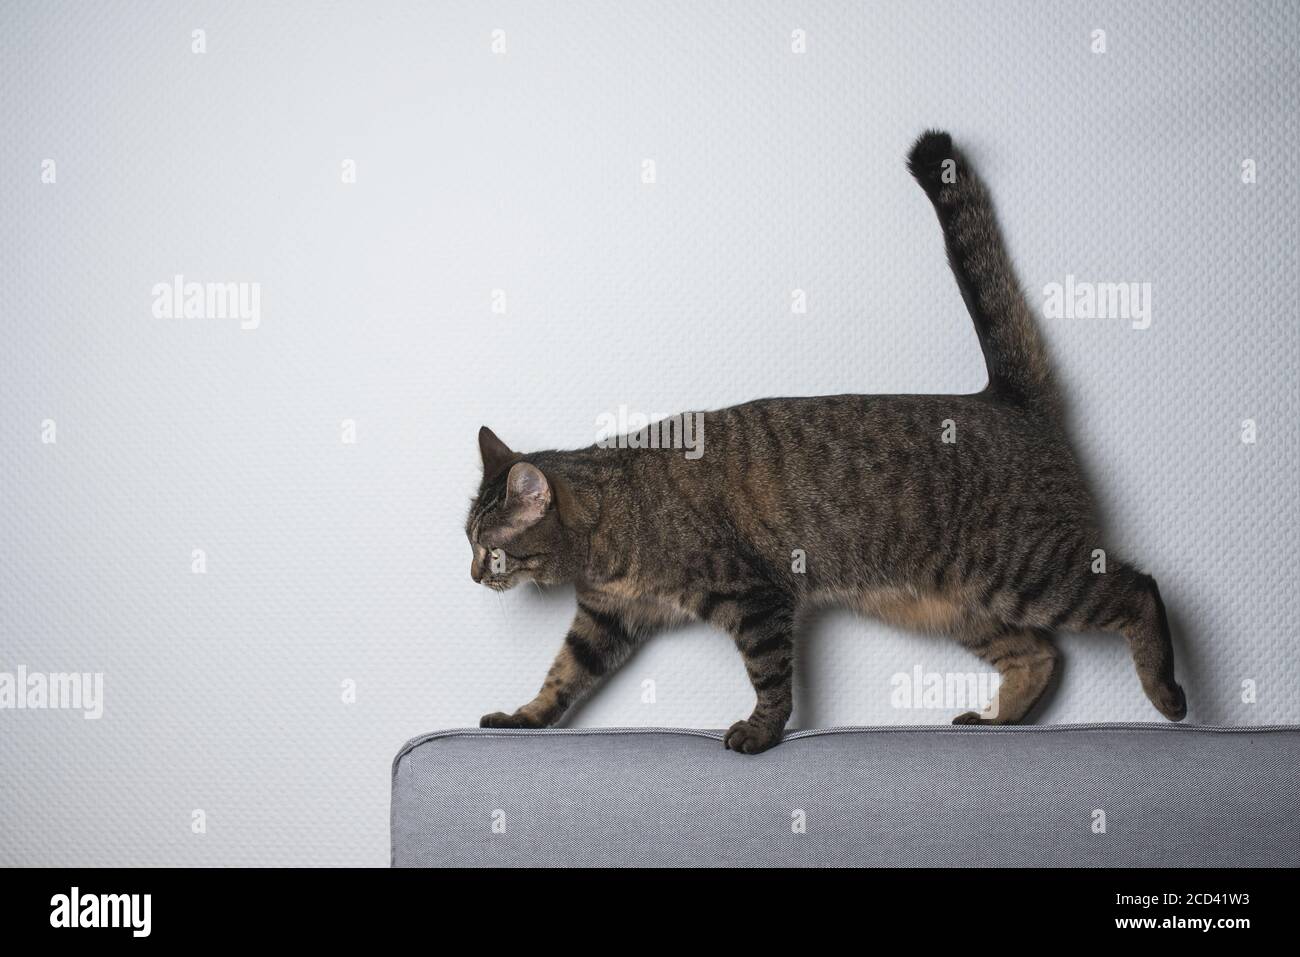 Tabby European Shorthair cat equilibratura su lettino nella parte anteriore del muro bianco Foto Stock